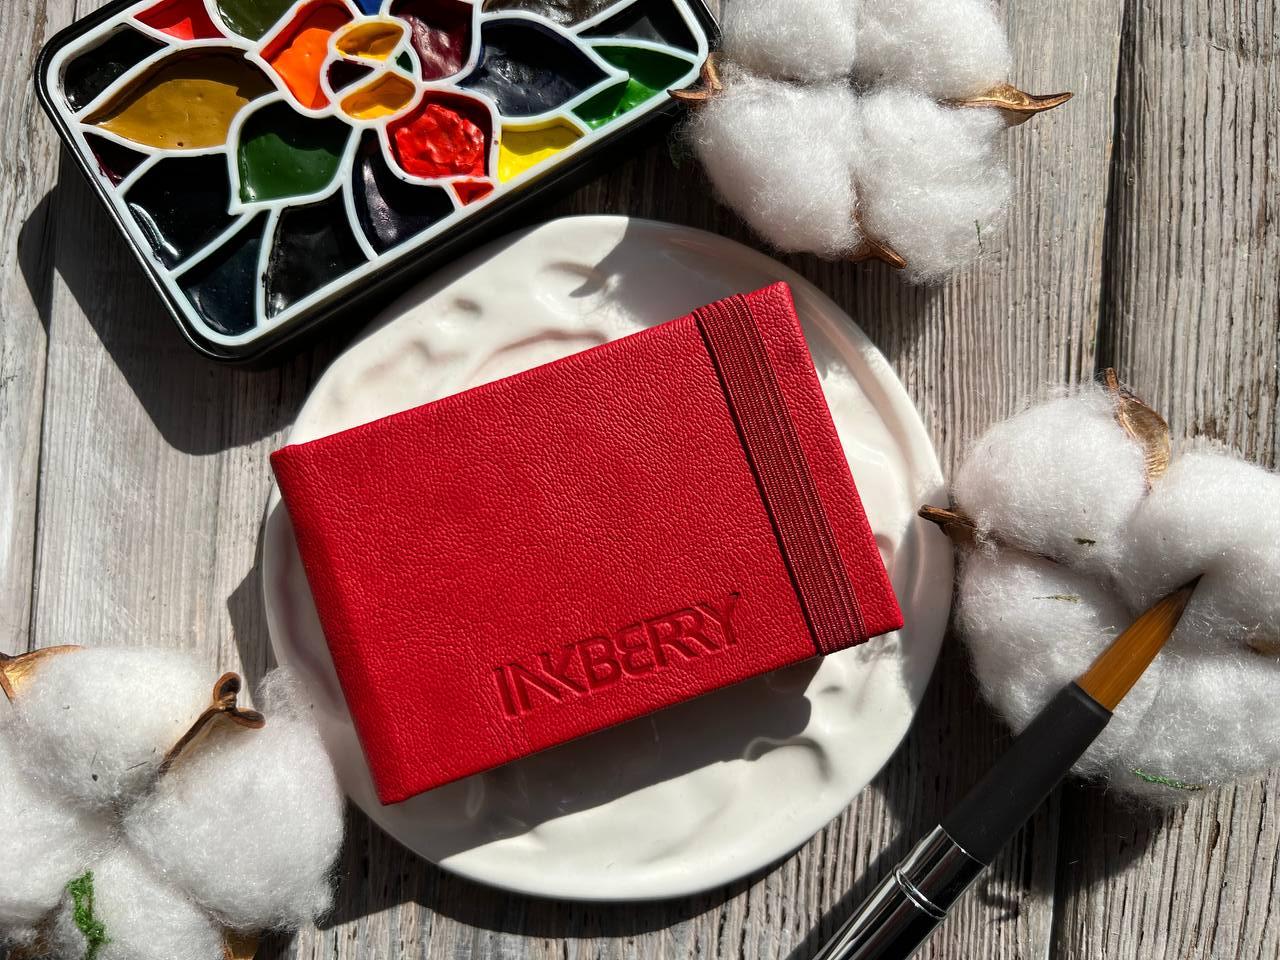 Скетчбук для акварели Inkberry 5х8 см 230 г 50% хлопка, красный книжная жизнь лили сажиной